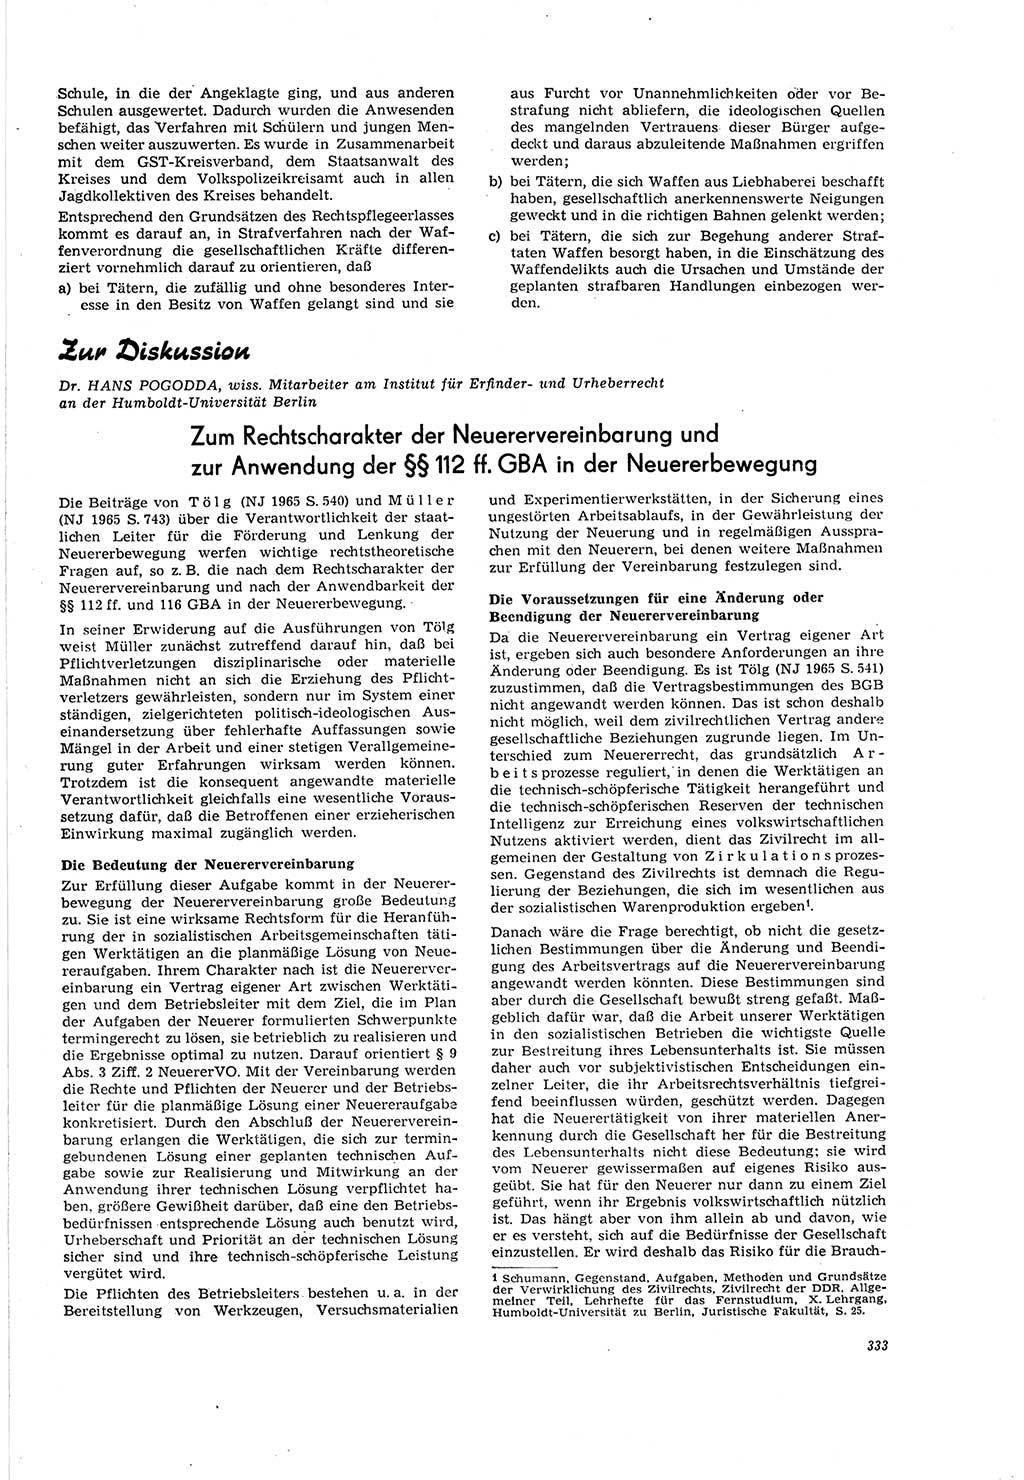 Neue Justiz (NJ), Zeitschrift für Recht und Rechtswissenschaft [Deutsche Demokratische Republik (DDR)], 20. Jahrgang 1966, Seite 333 (NJ DDR 1966, S. 333)